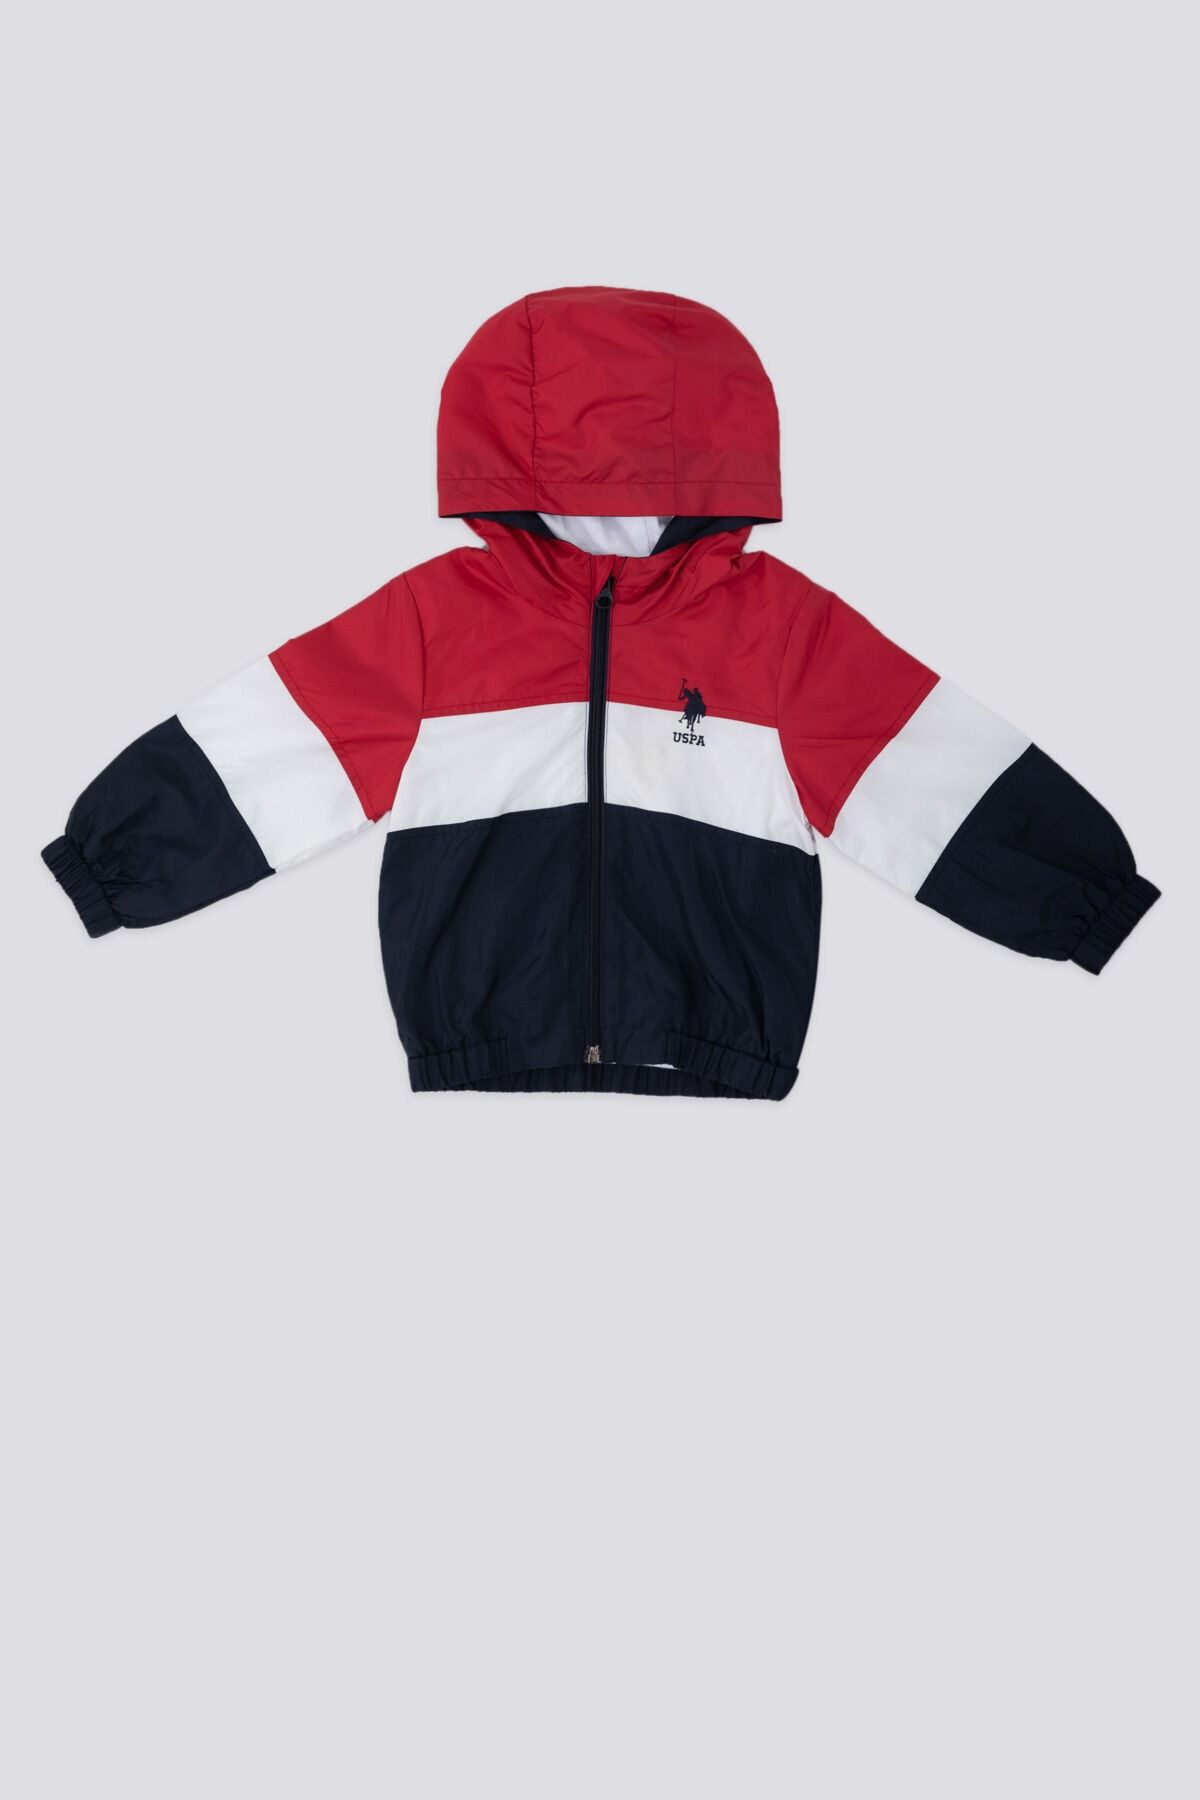 U.S. Polo Assn. The Radiance Of Colors Kırmızı Erkek Bebek Yağmurluk